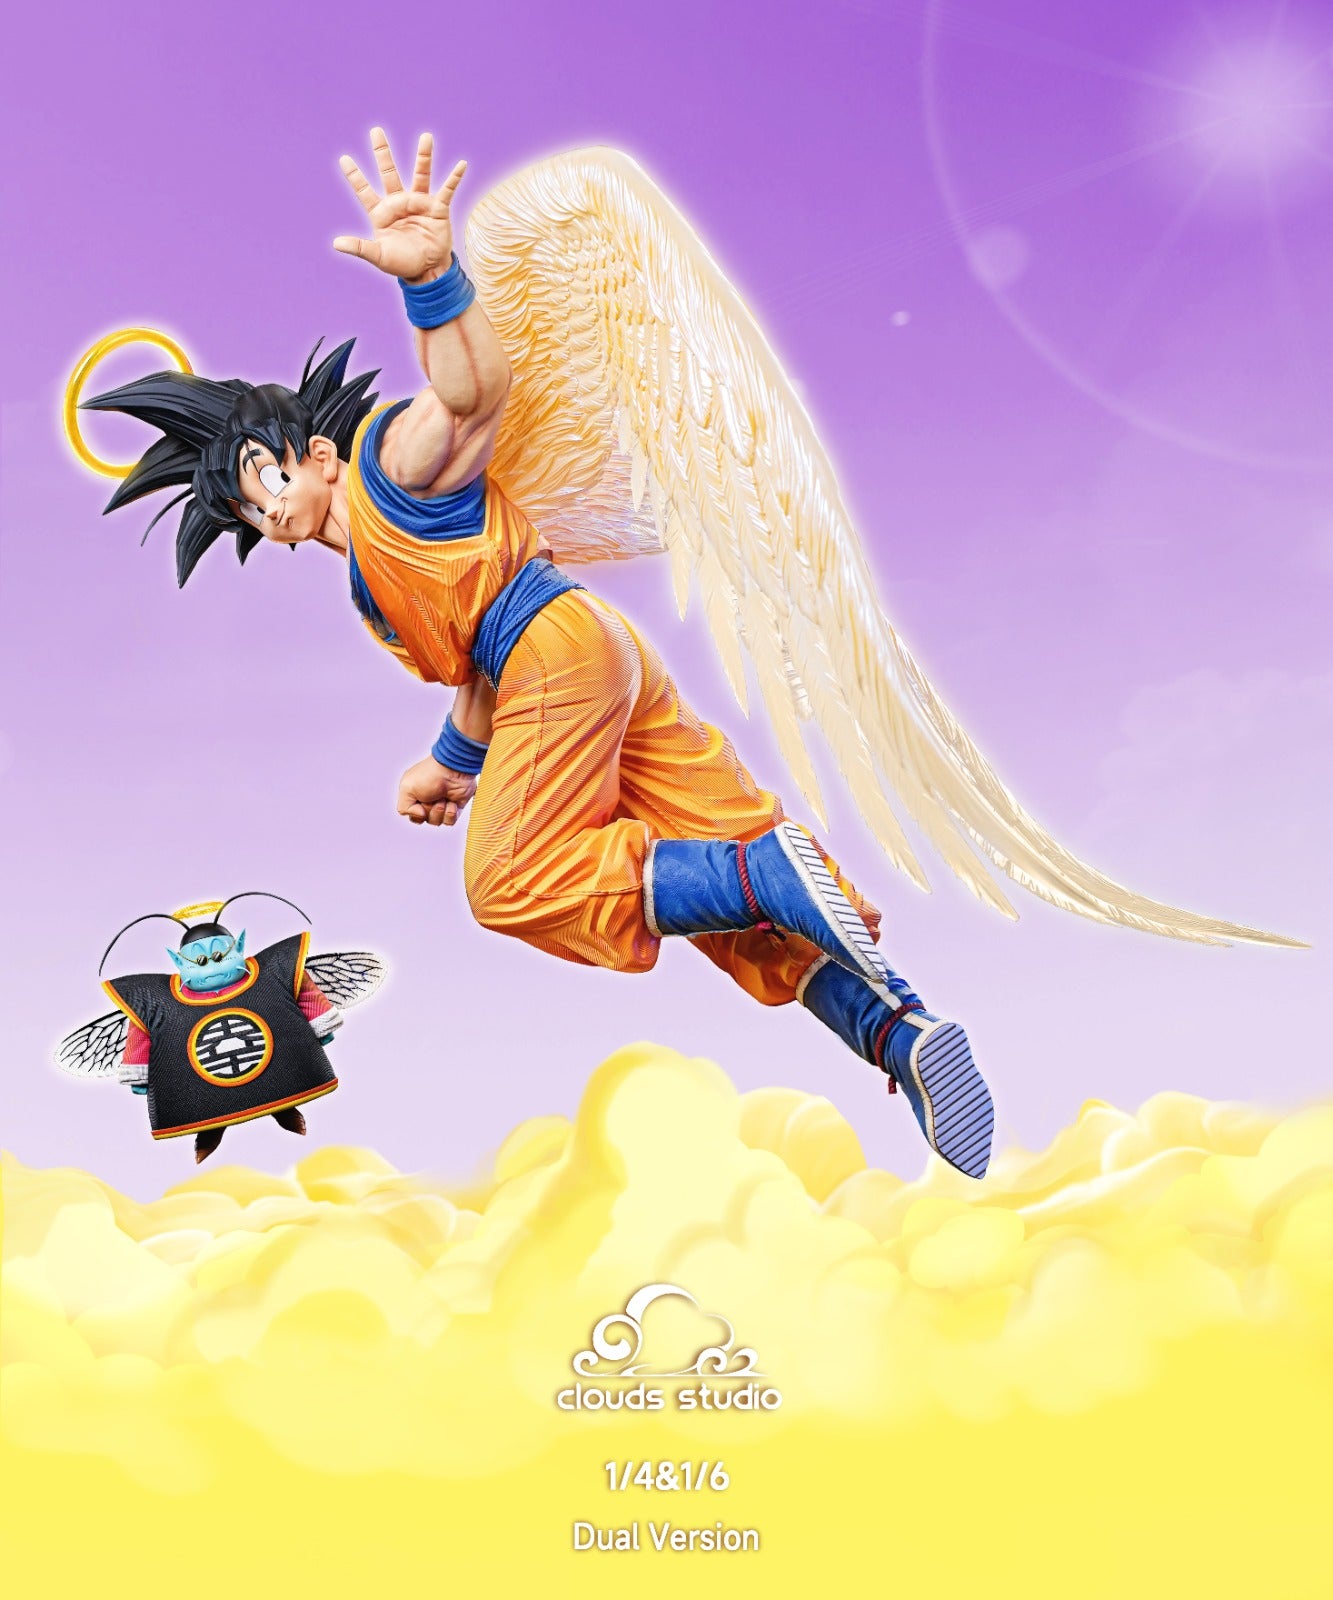 Clouds - Goku